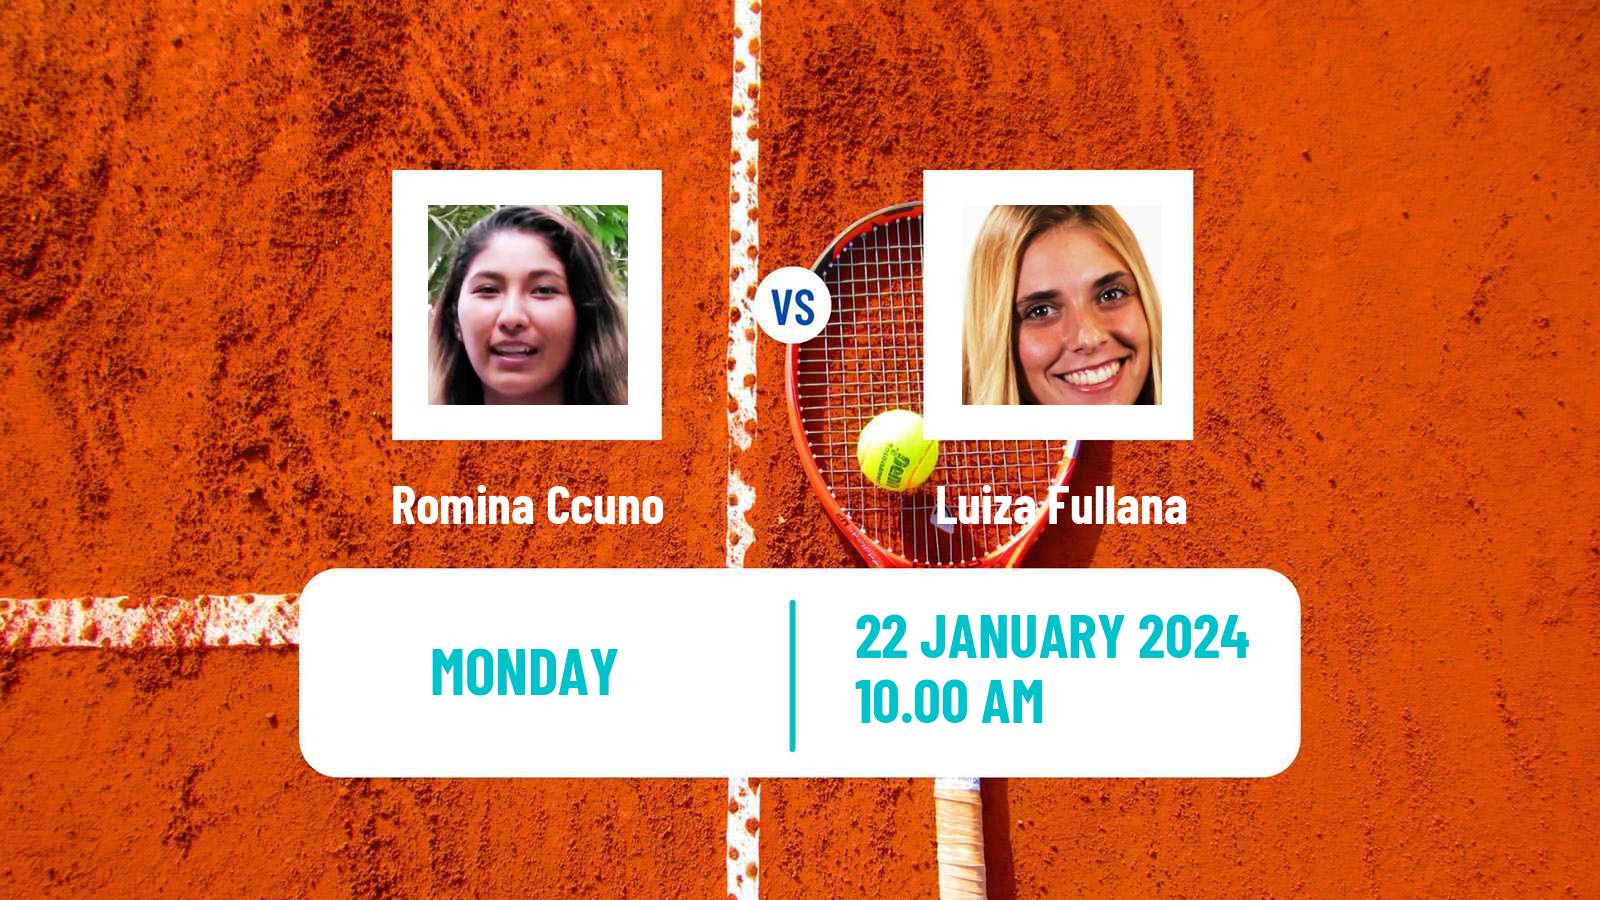 Tennis ITF W35 Buenos Aires 2 Women Romina Ccuno - Luiza Fullana